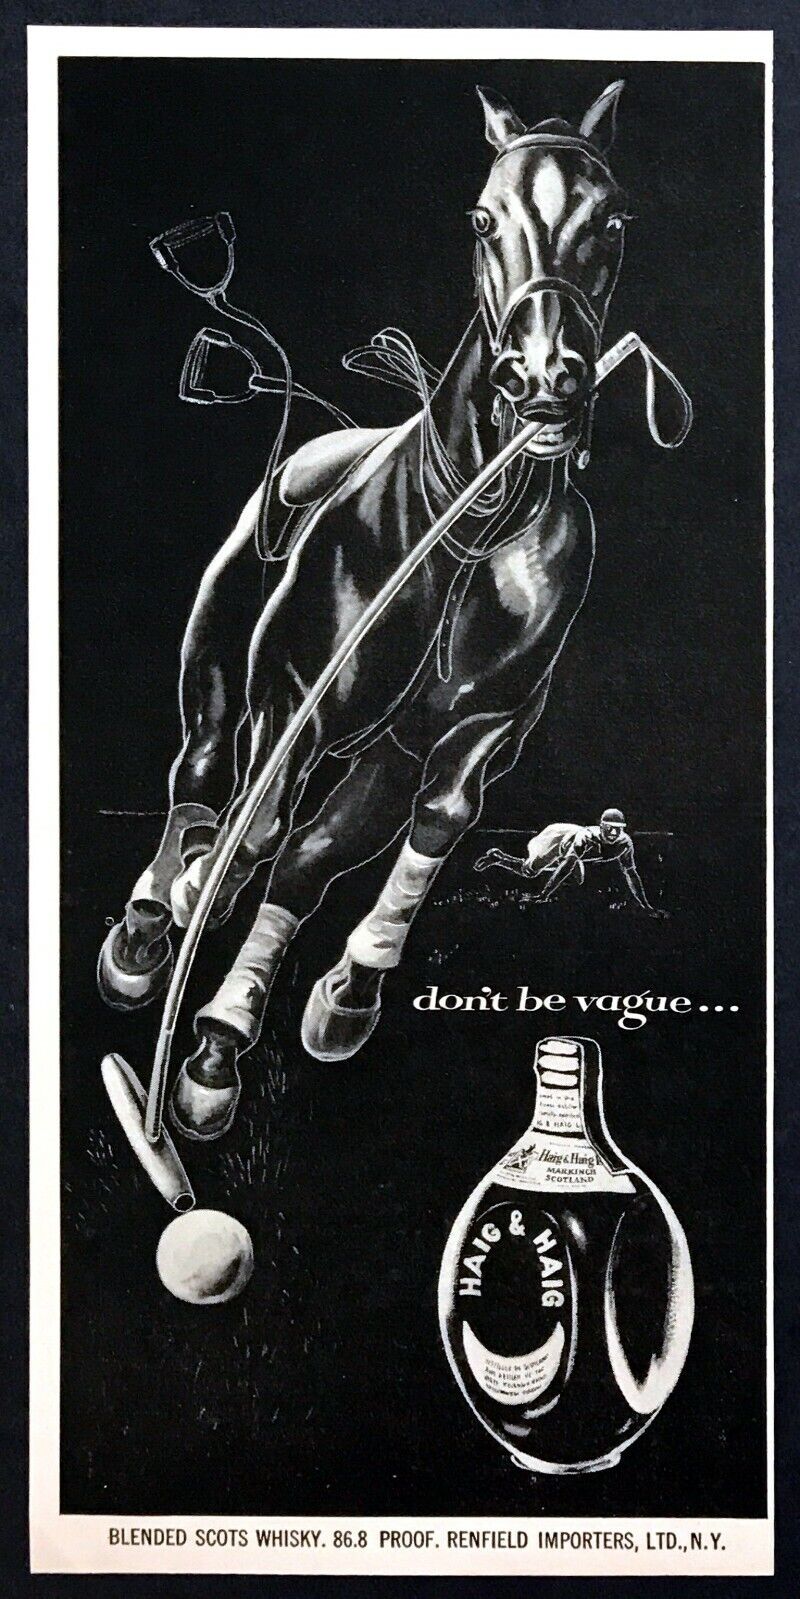 1954 Polo Horse Hitting Ball Throwing Rider art Haig & Haig vintage print ad